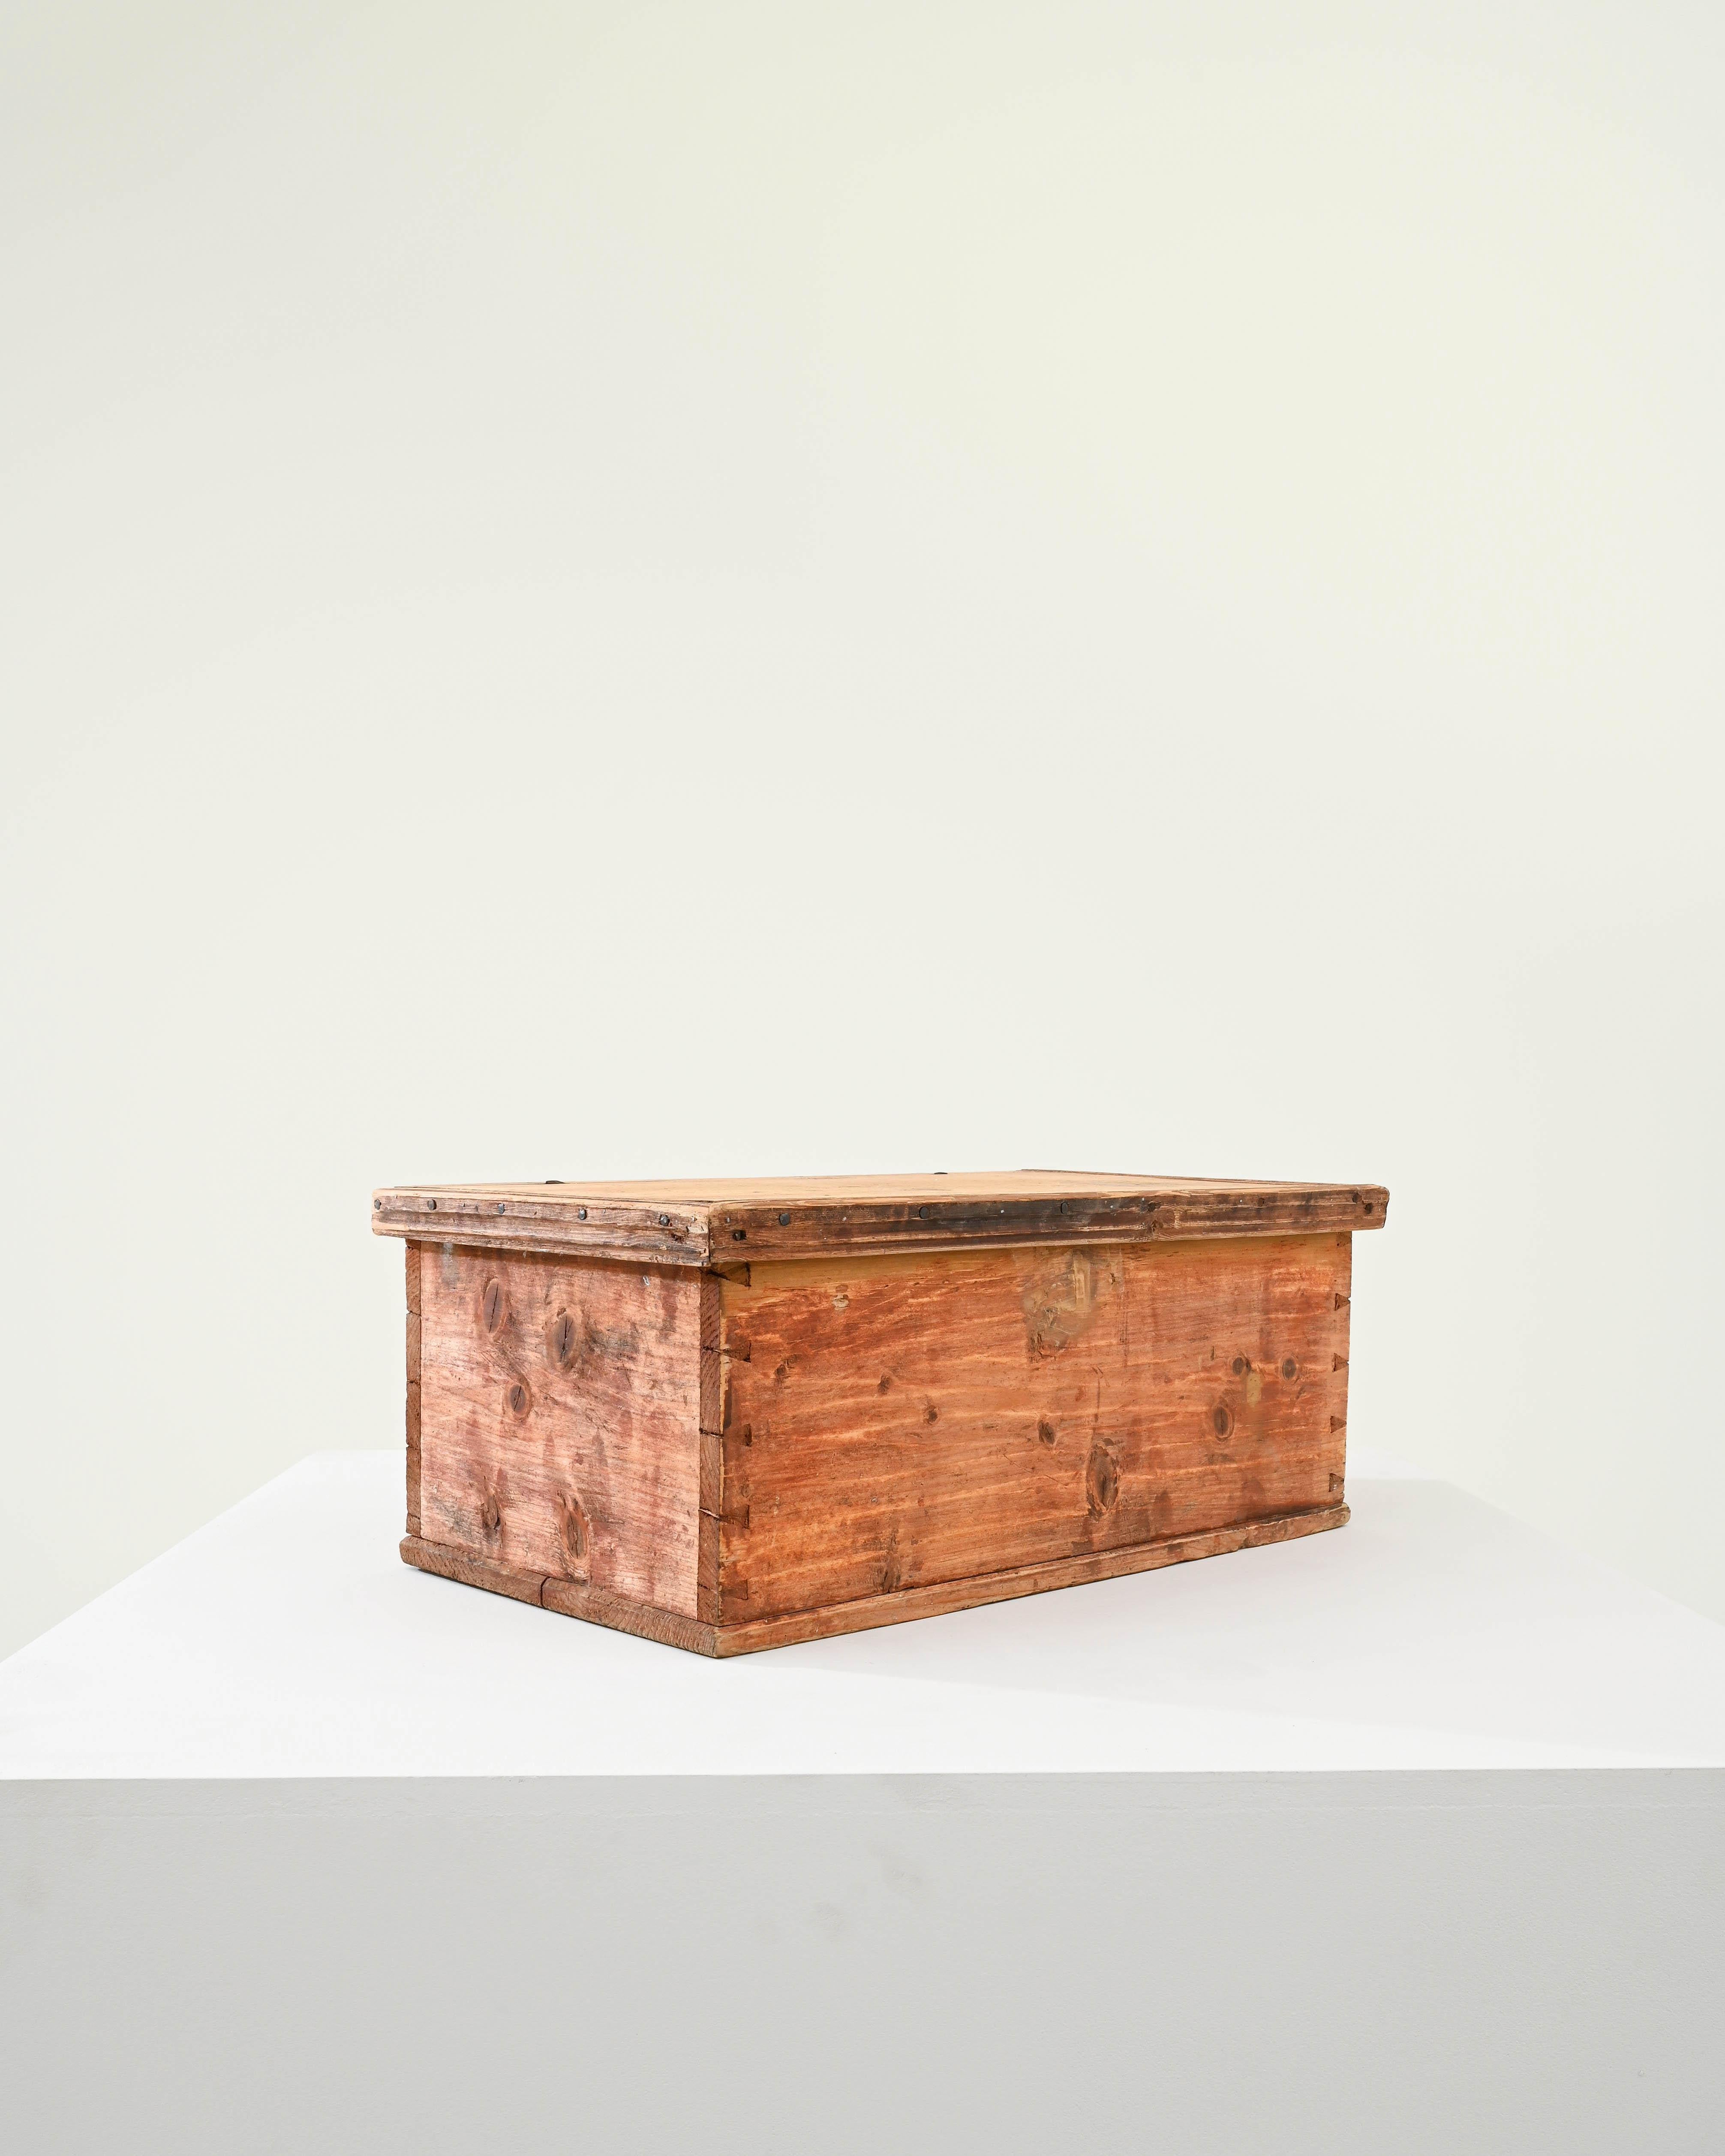 Cette boîte en bois a été produite en Scandinavie, vers 1900. Une boîte à claque patinée montrant les signes d'une existence usée par le temps, avec des ferrures métalliques d'origine. Habilement clouée et assemblée à l'aide de queues d'aronde